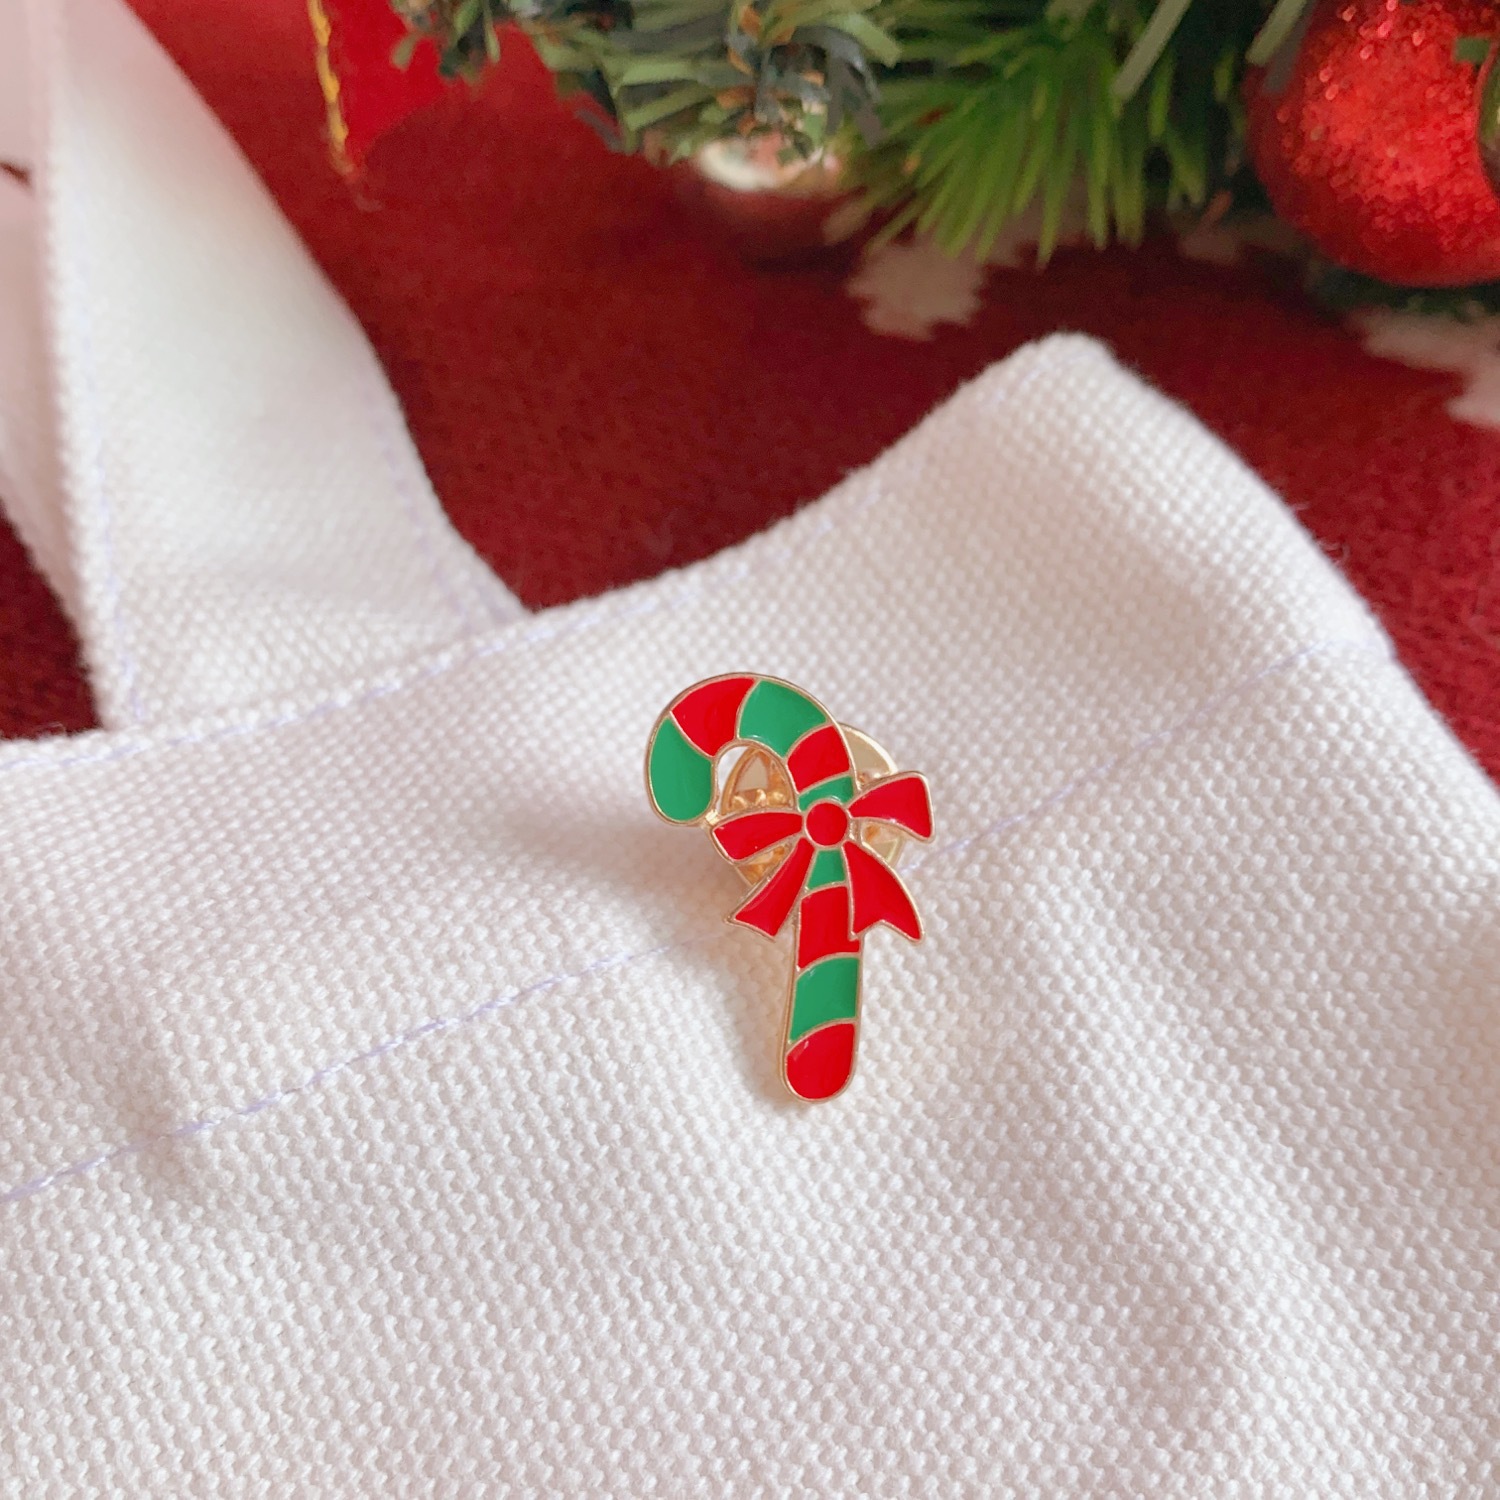 可愛聖誕節必備胸針 創意聖誕圖案胸針 壓克力衣服包包小裝飾12